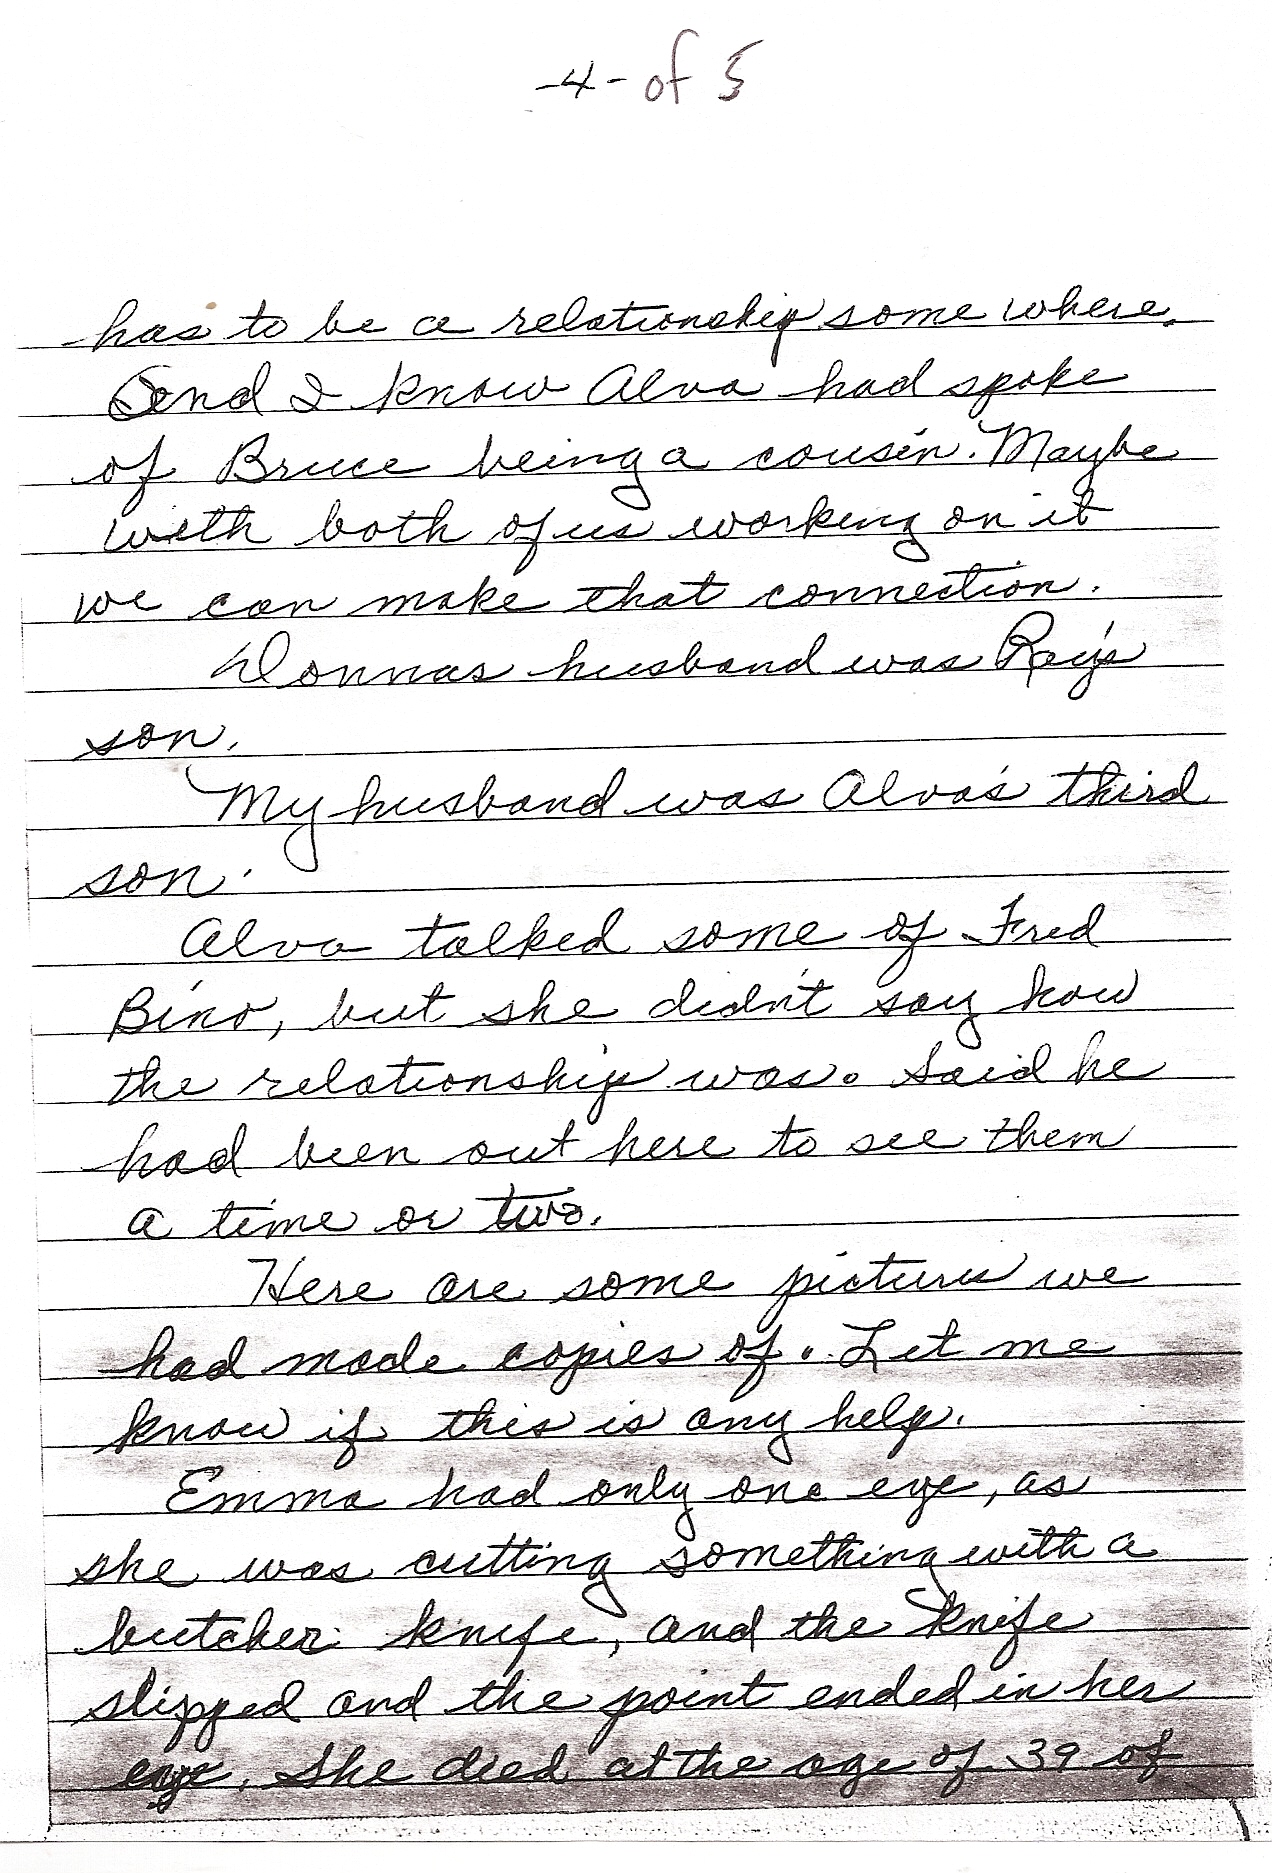 Hand written letter pg 4 of 5